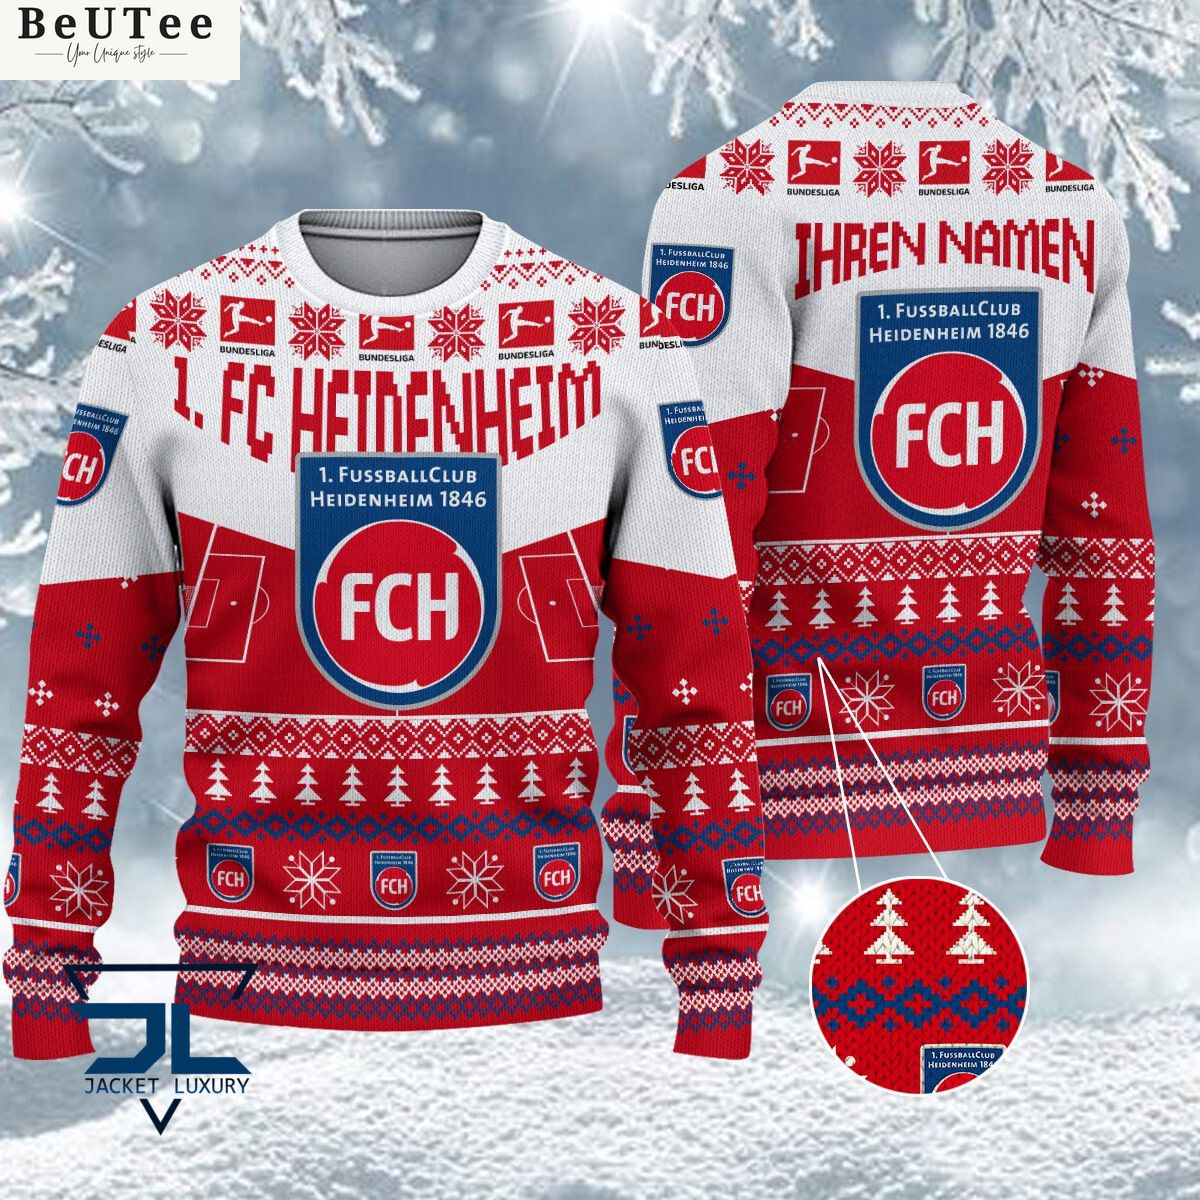 1 fc heidenheim limited for bundesliga fans ugly sweater jumper 1 hDKjW.jpg